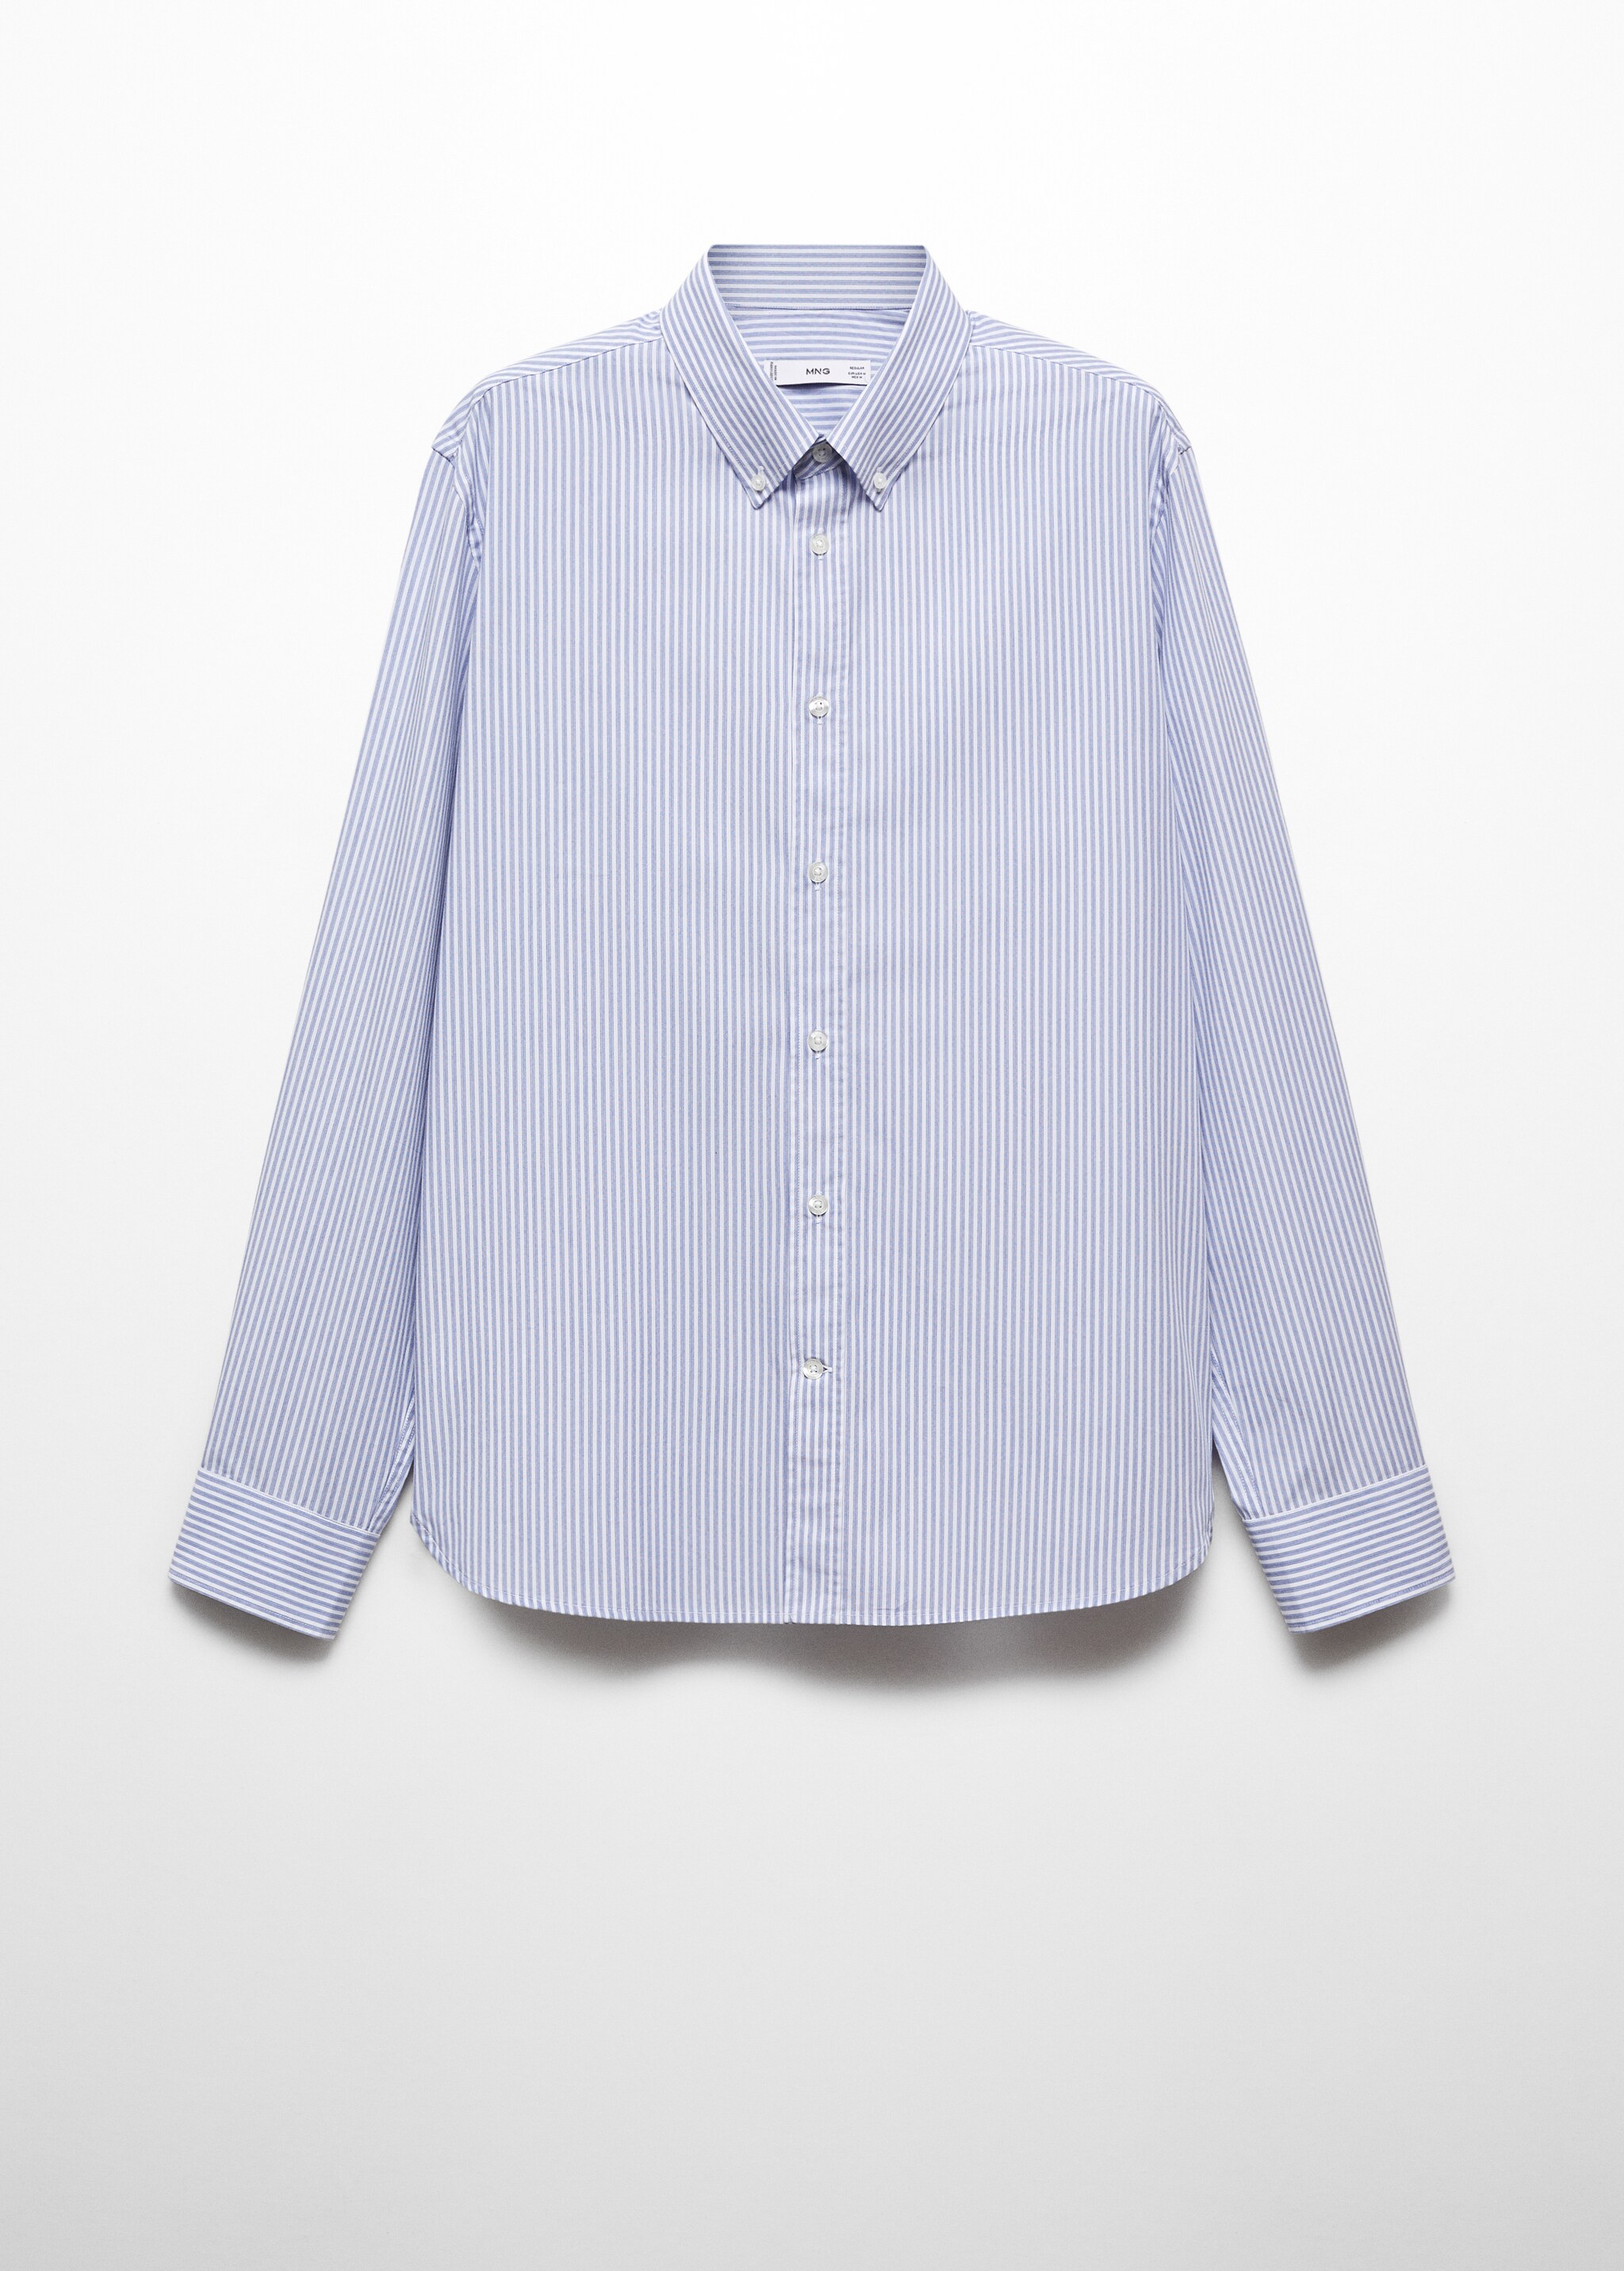 Camicia righe cotone regular-fit - Articolo senza modello